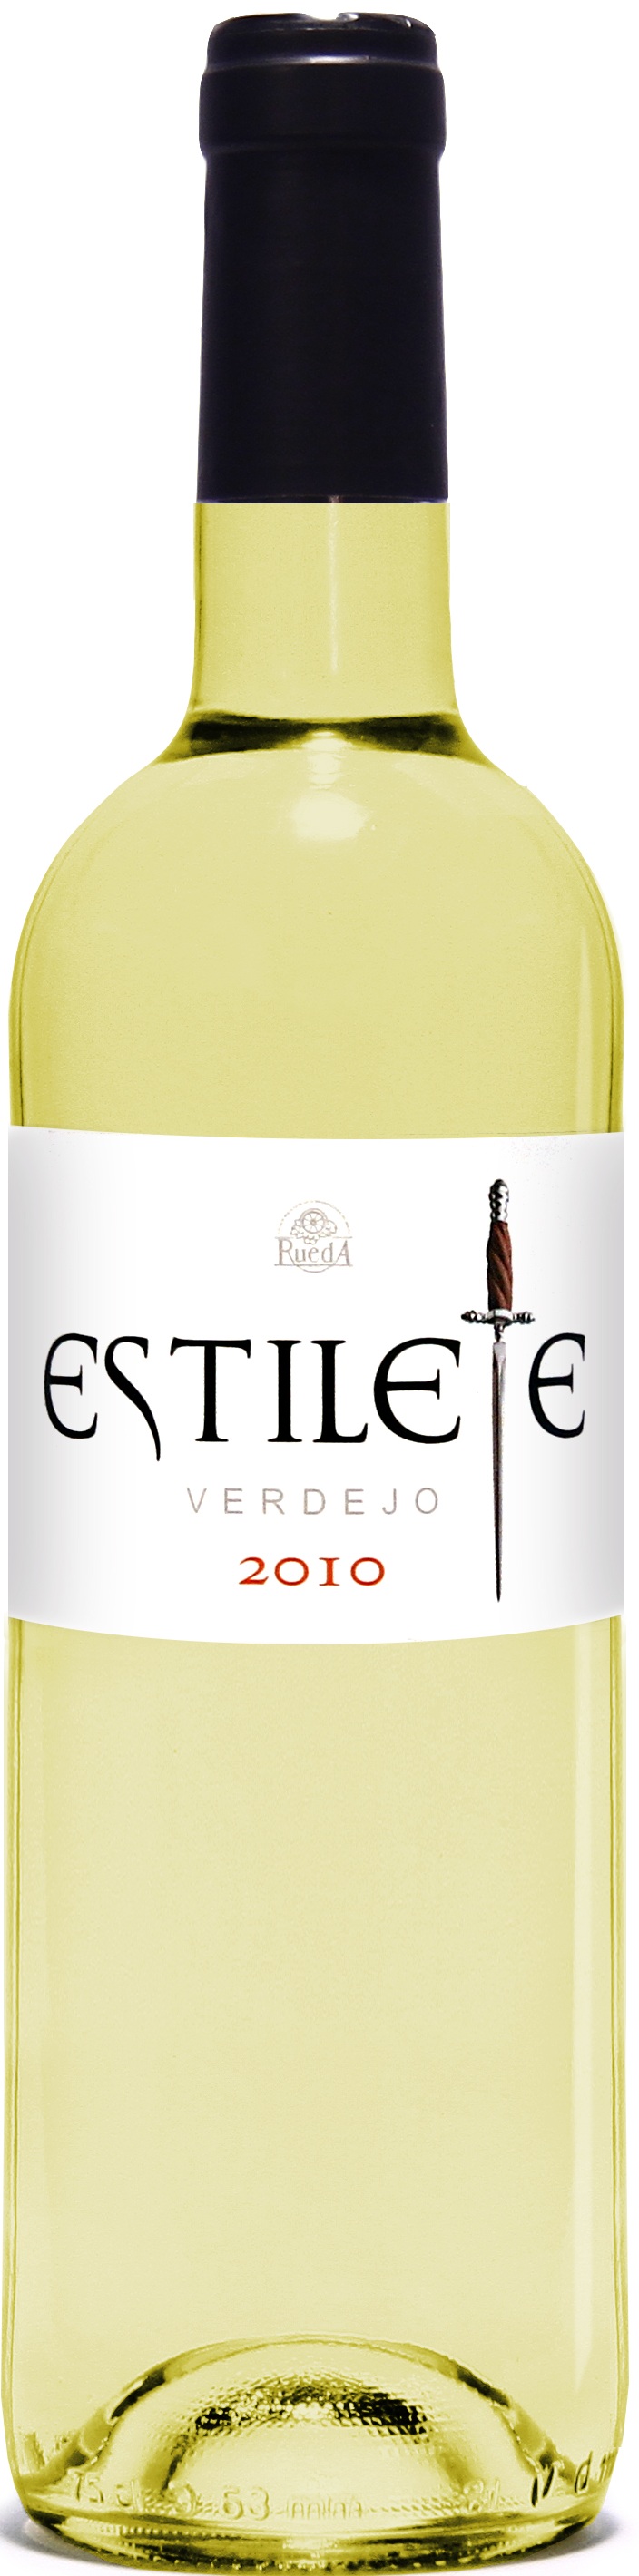 Bild von der Weinflasche Estilete Verdejo